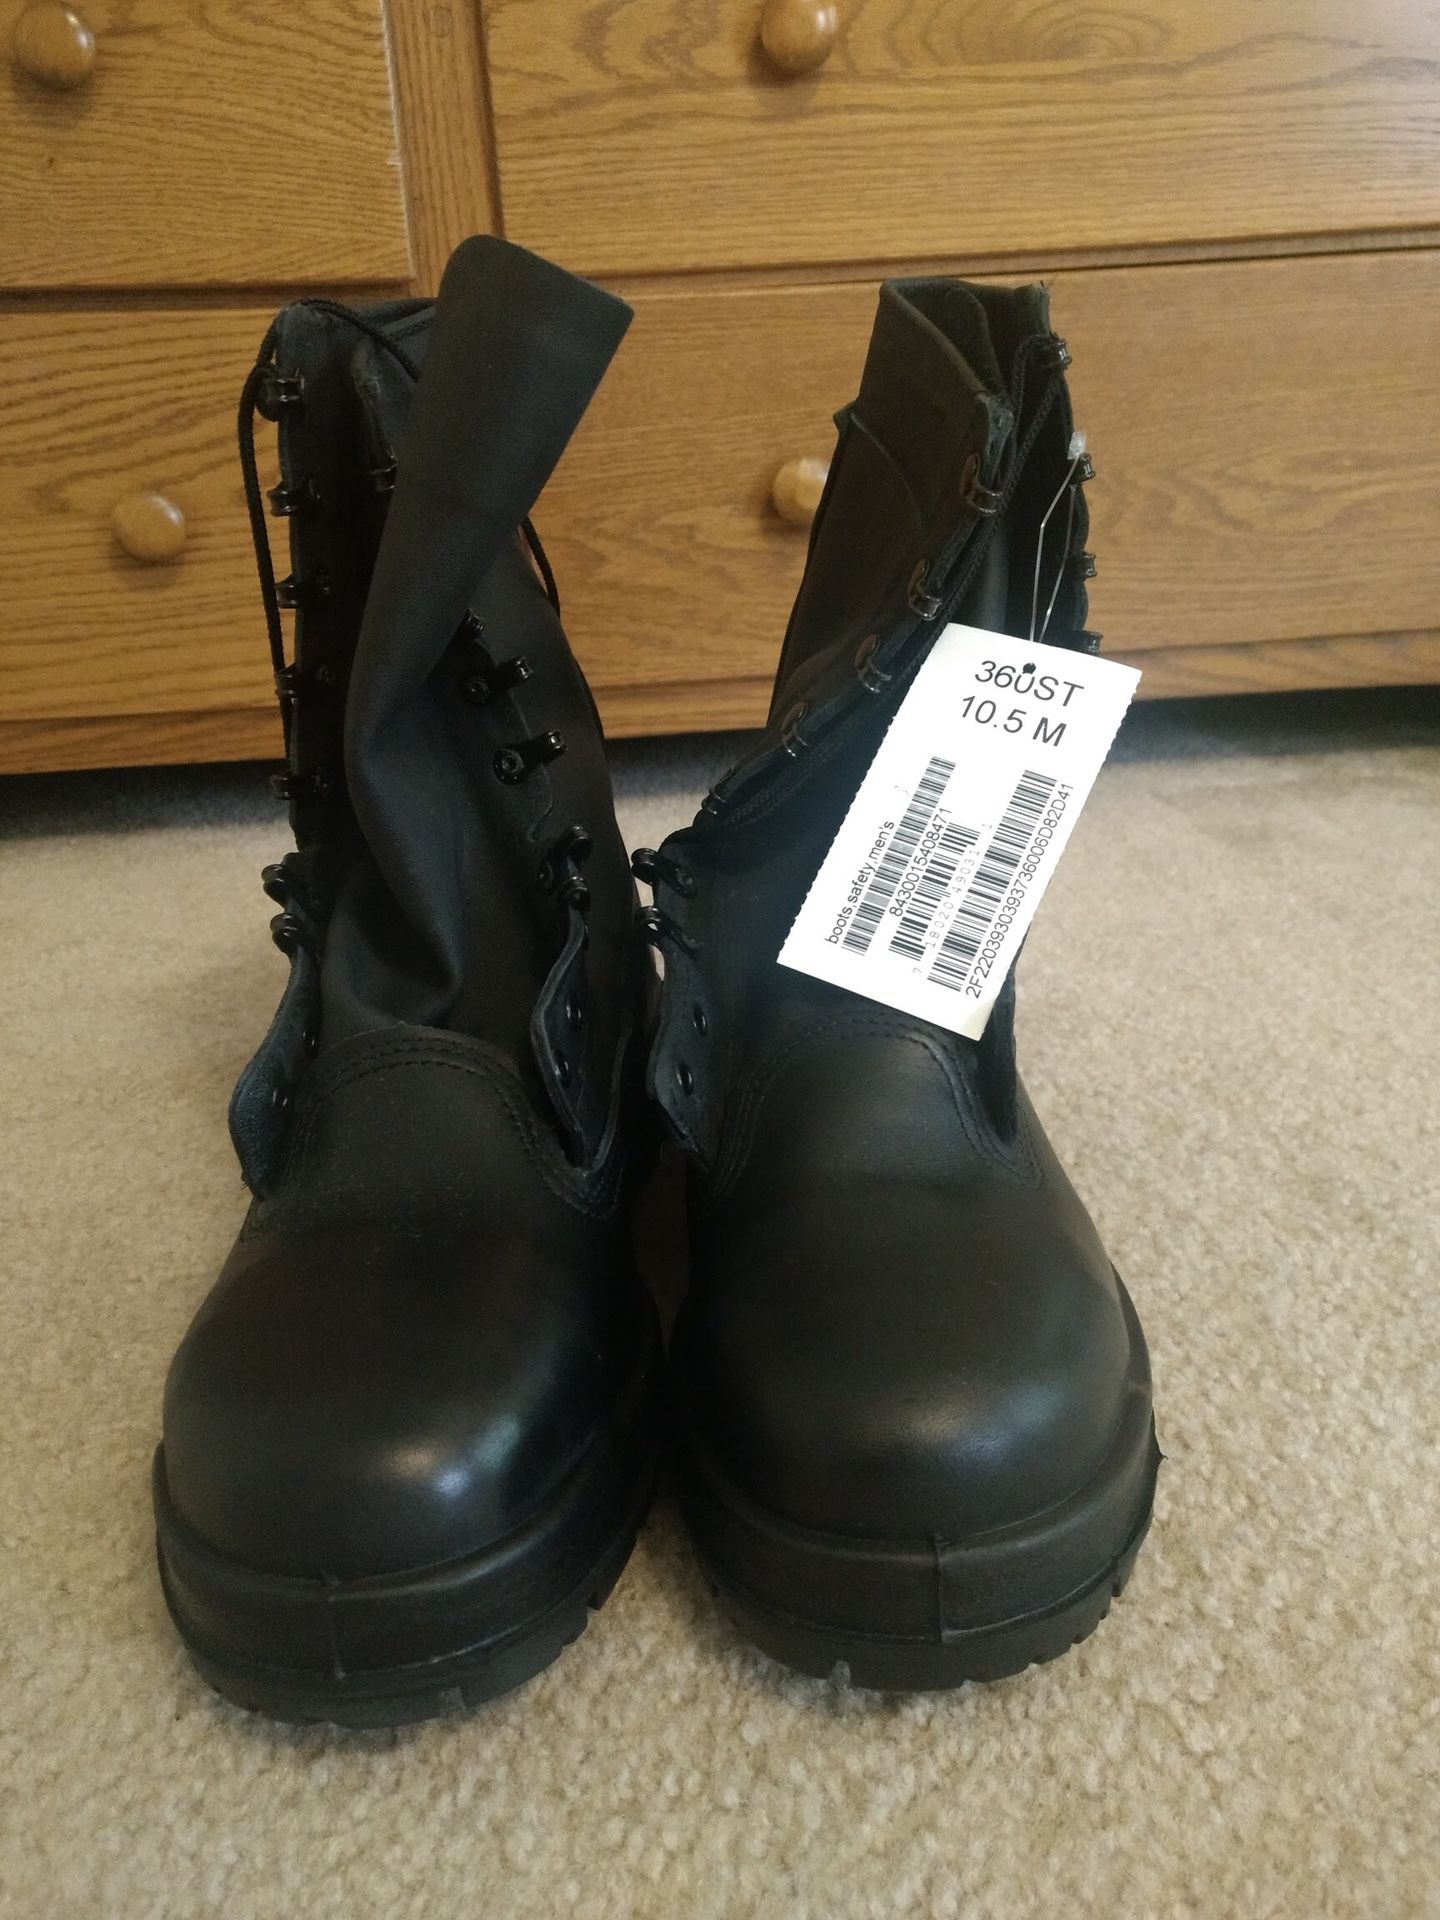 NEW U.S. Navy Working Uniform Boots Men’s 10.5